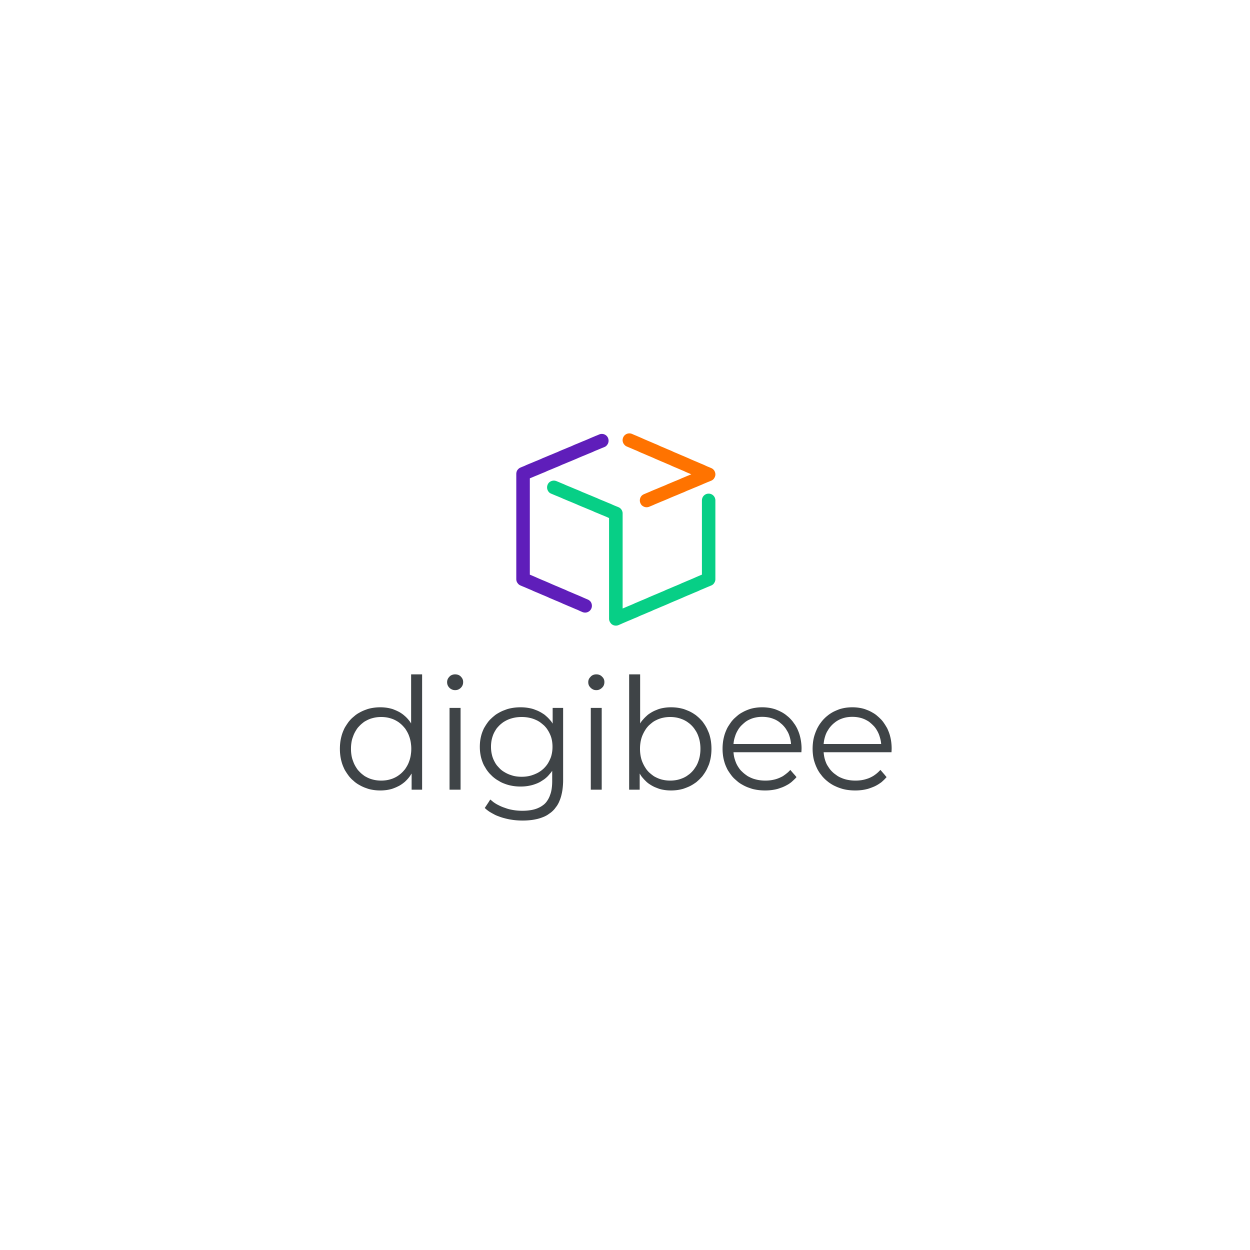 Digibee logo